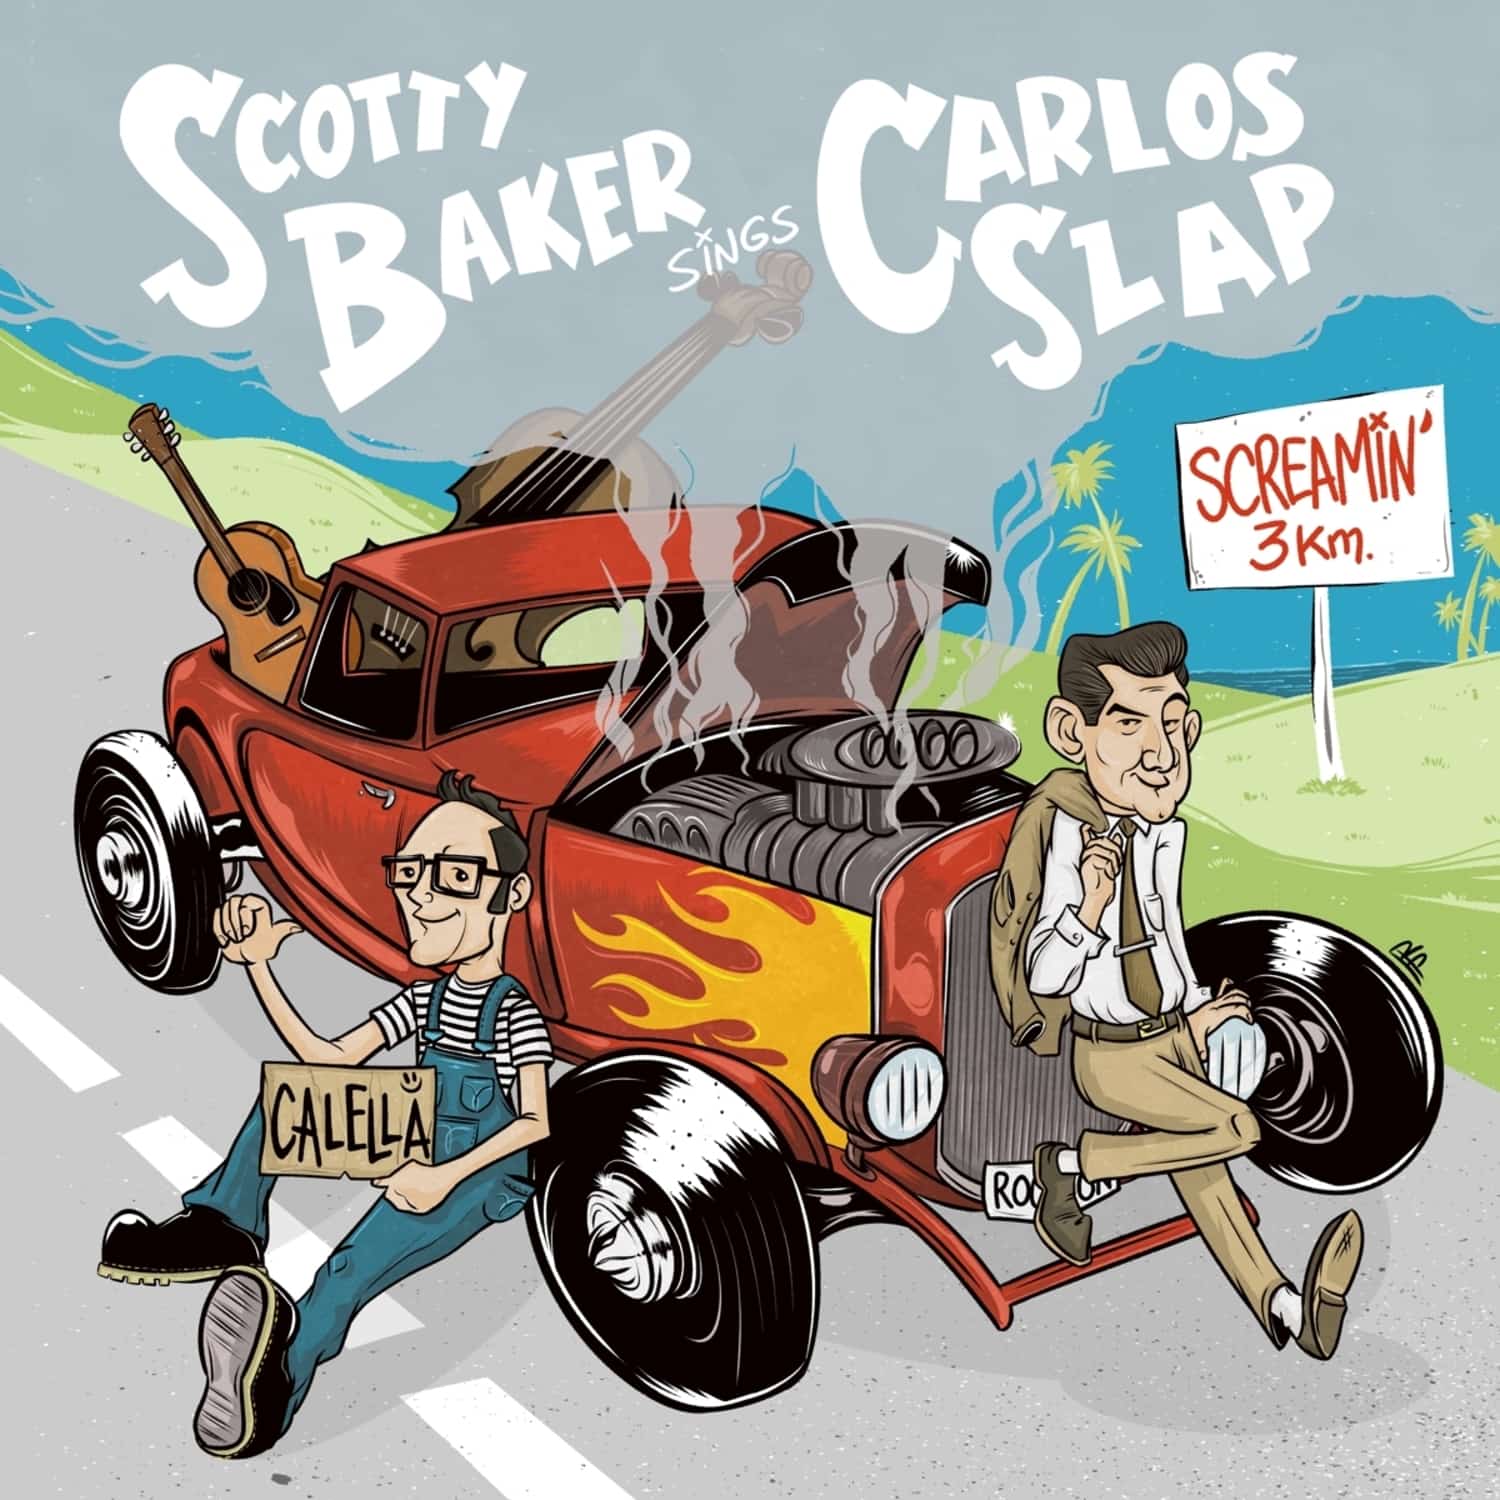  Scotty Baker / Carlos Slap - SCREAMIN BOP 